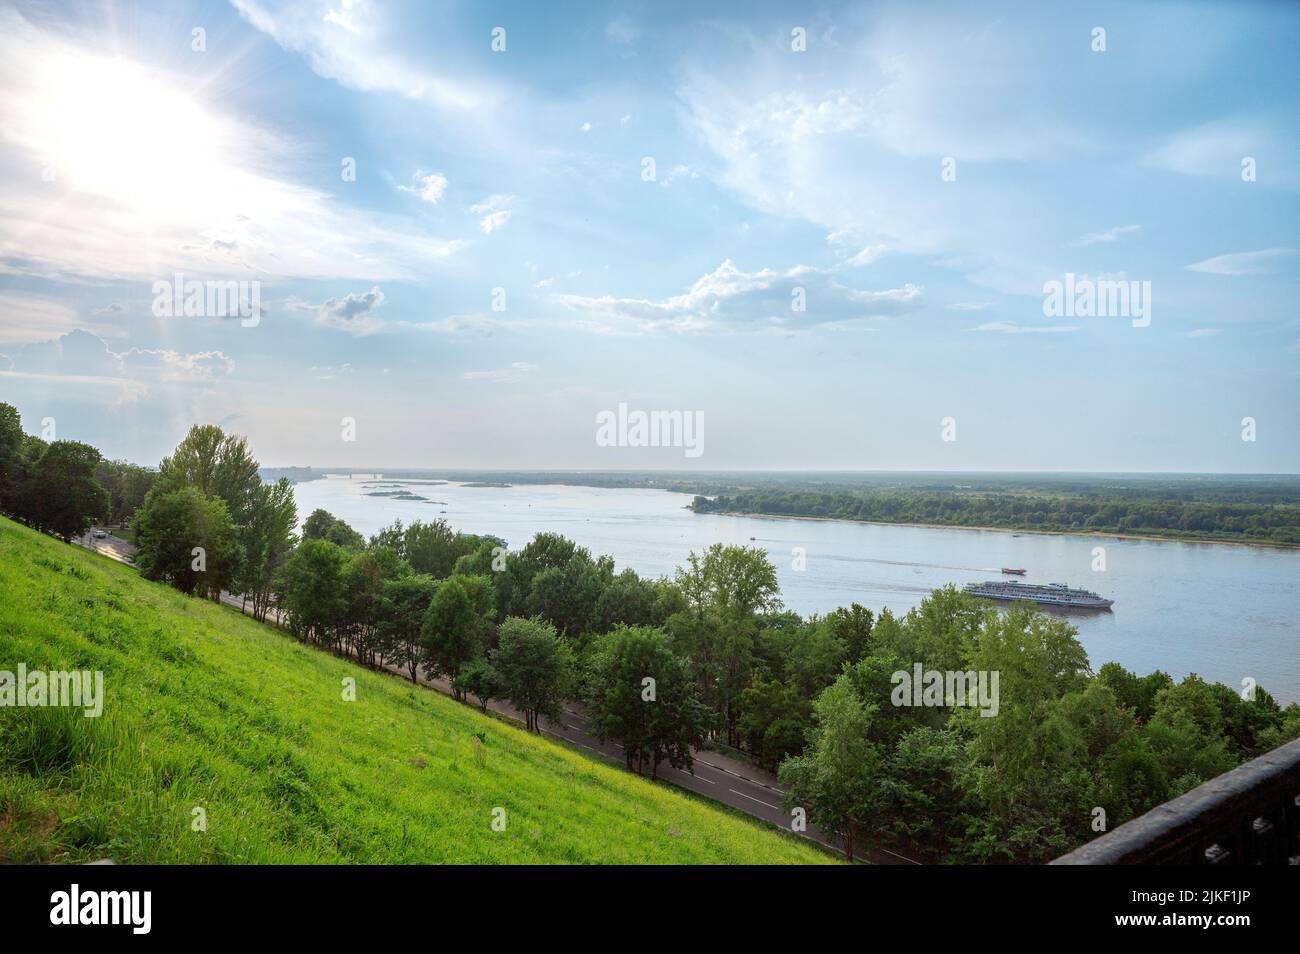 Fluss und Hügel an sonnigen Sommertagen. Sommerliche Landschaft. Großes Mississippi-Flusspanorama mit blauem Himmel und weißen Wolken Stockfoto